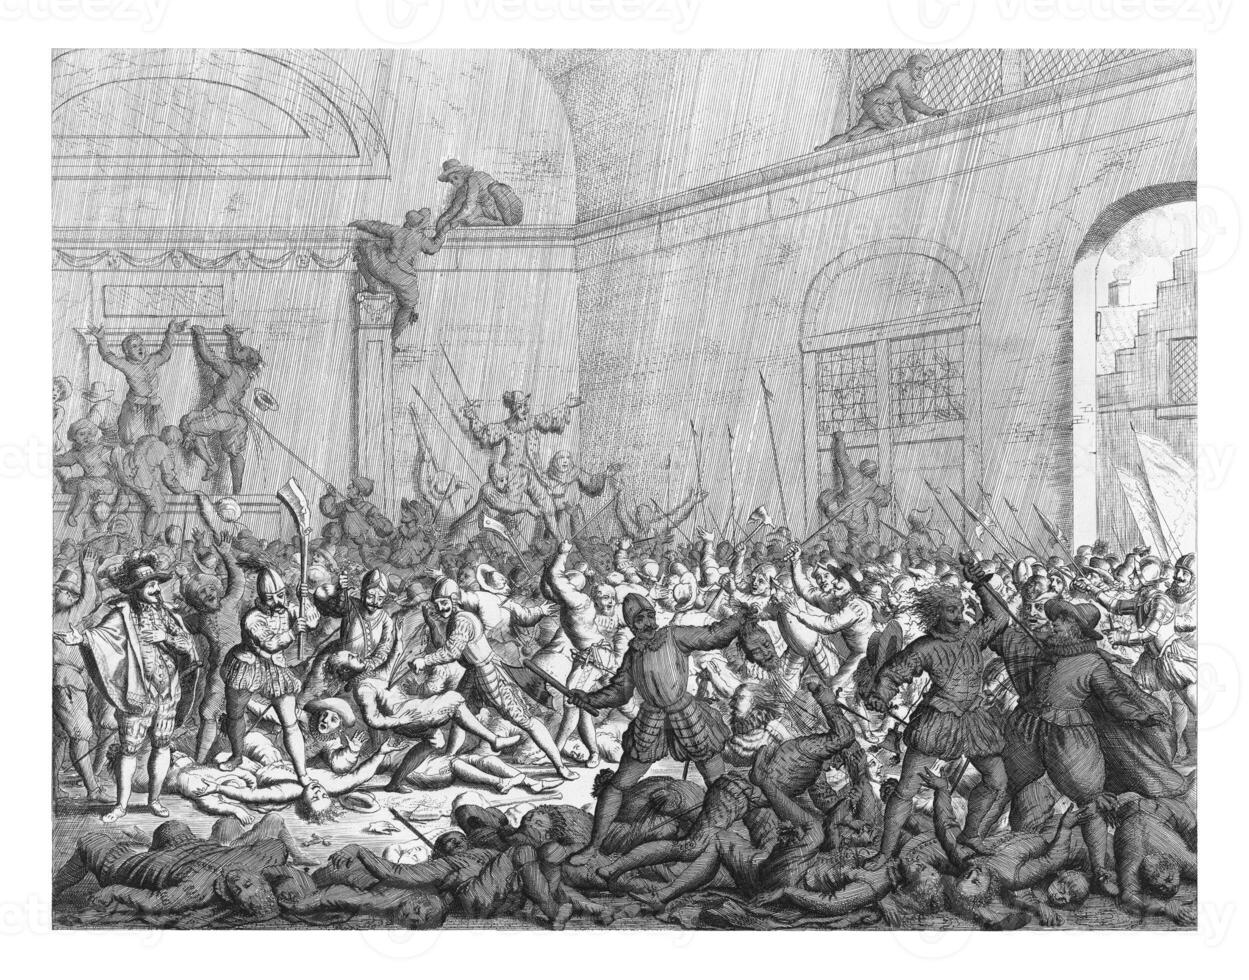 assassinato dentro uma Igreja dentro naarden, 1572 foto